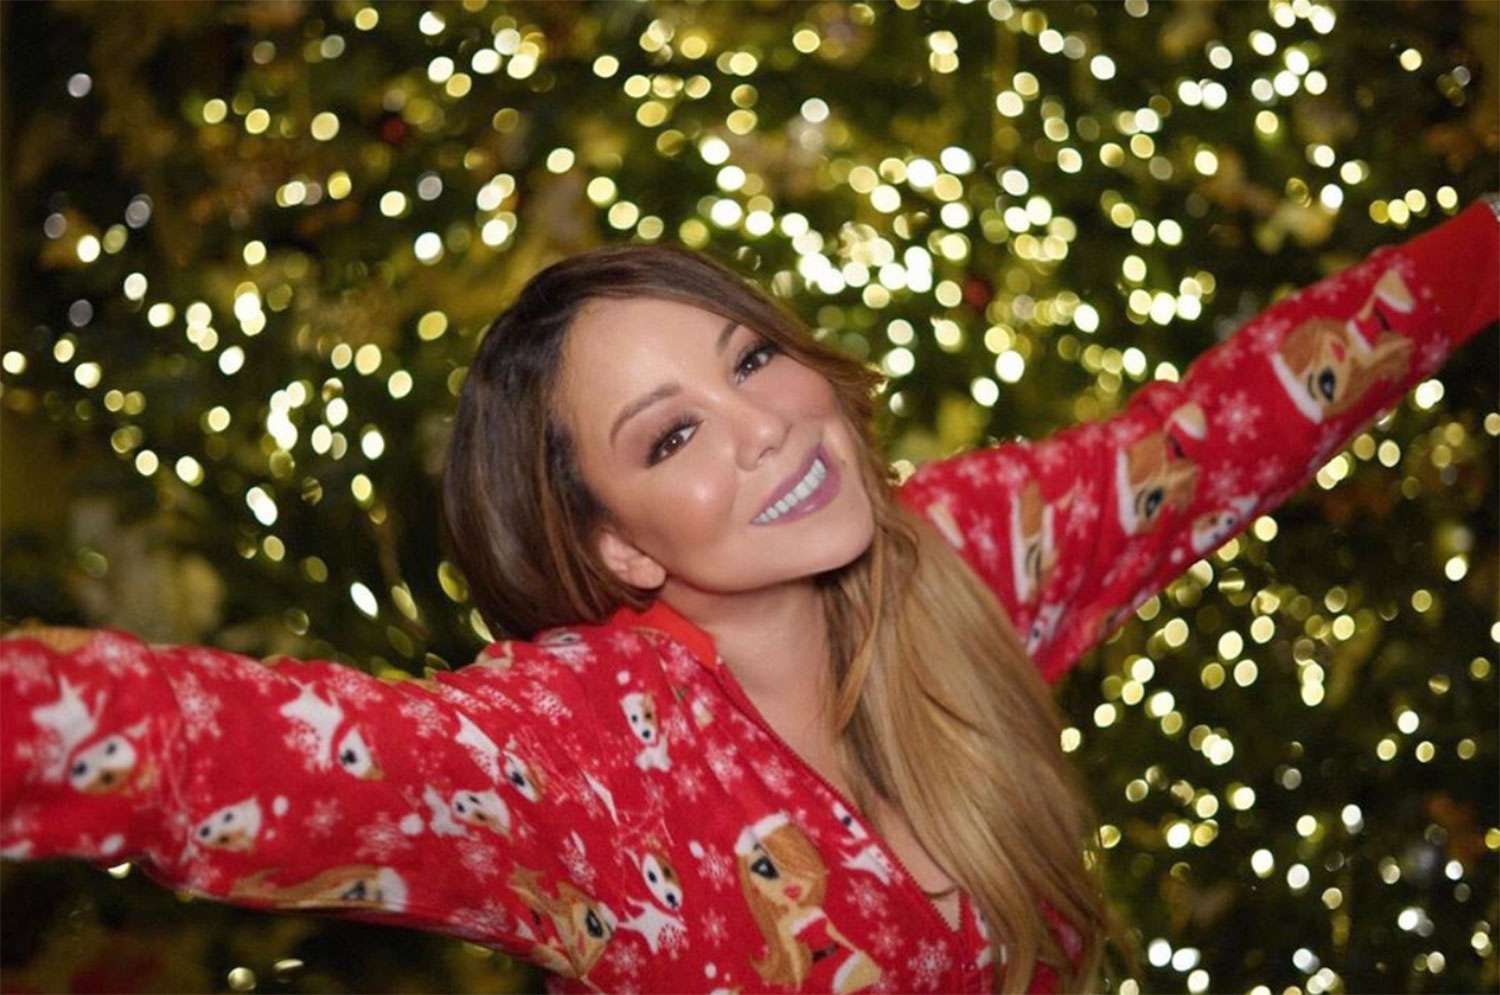 Mariah Carey Christmas